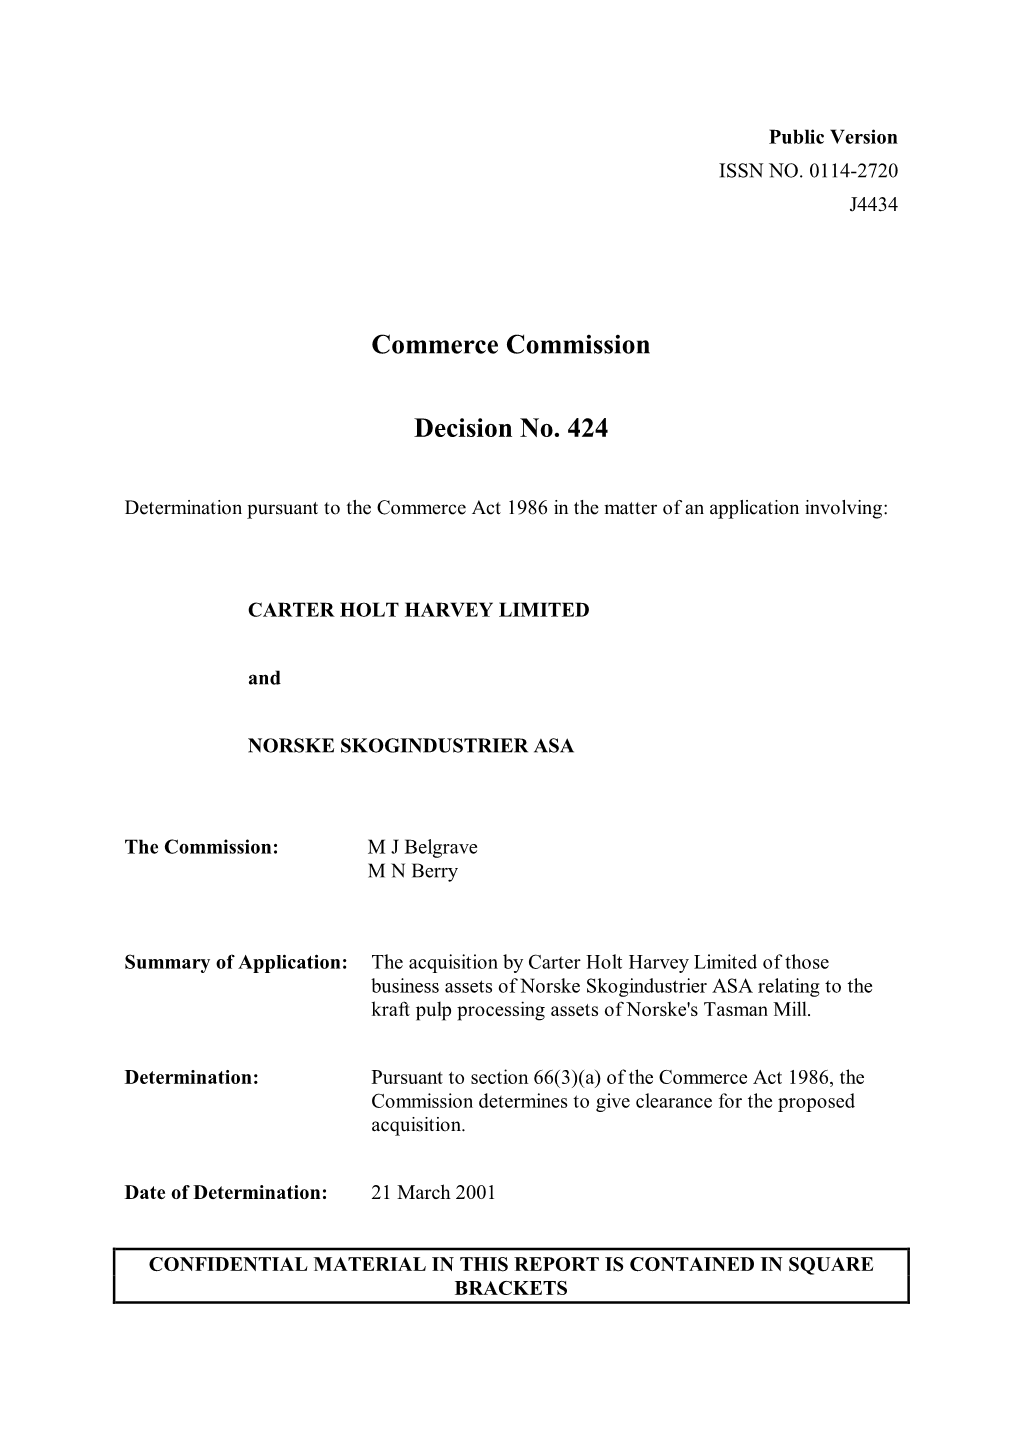 Commerce Commission Decision No